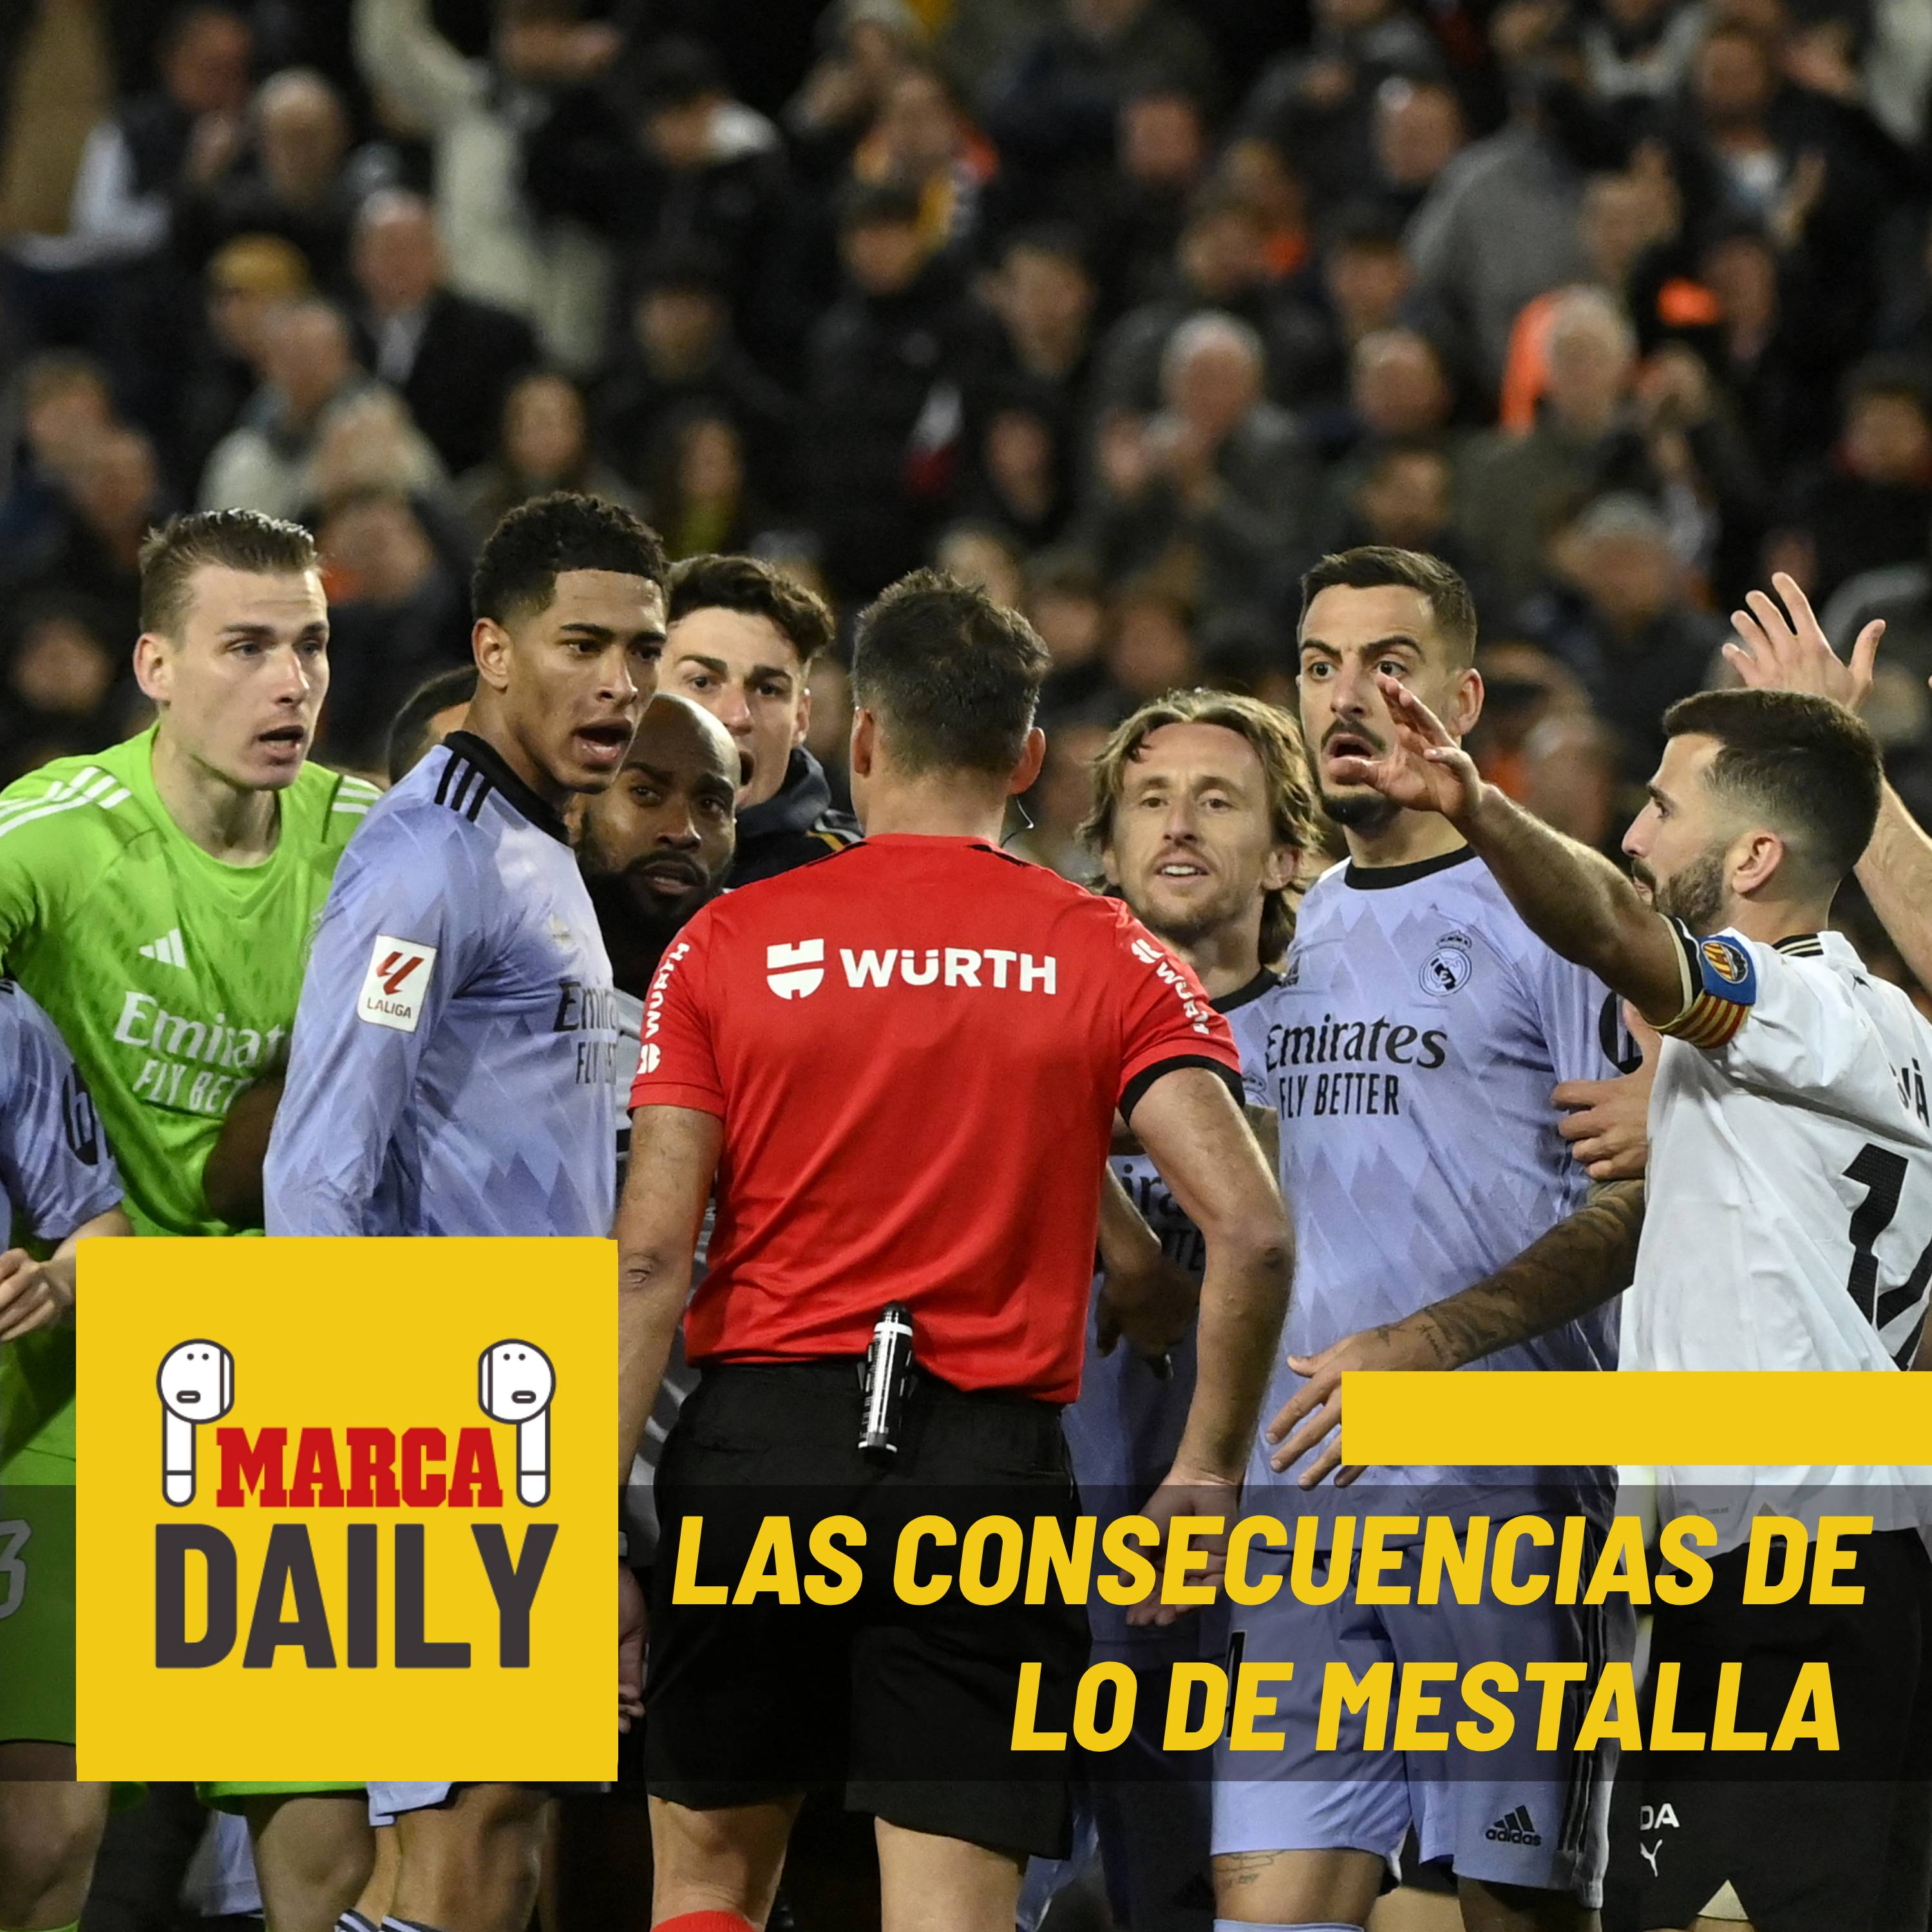 Las consecuencias de la polémica de Mestalla